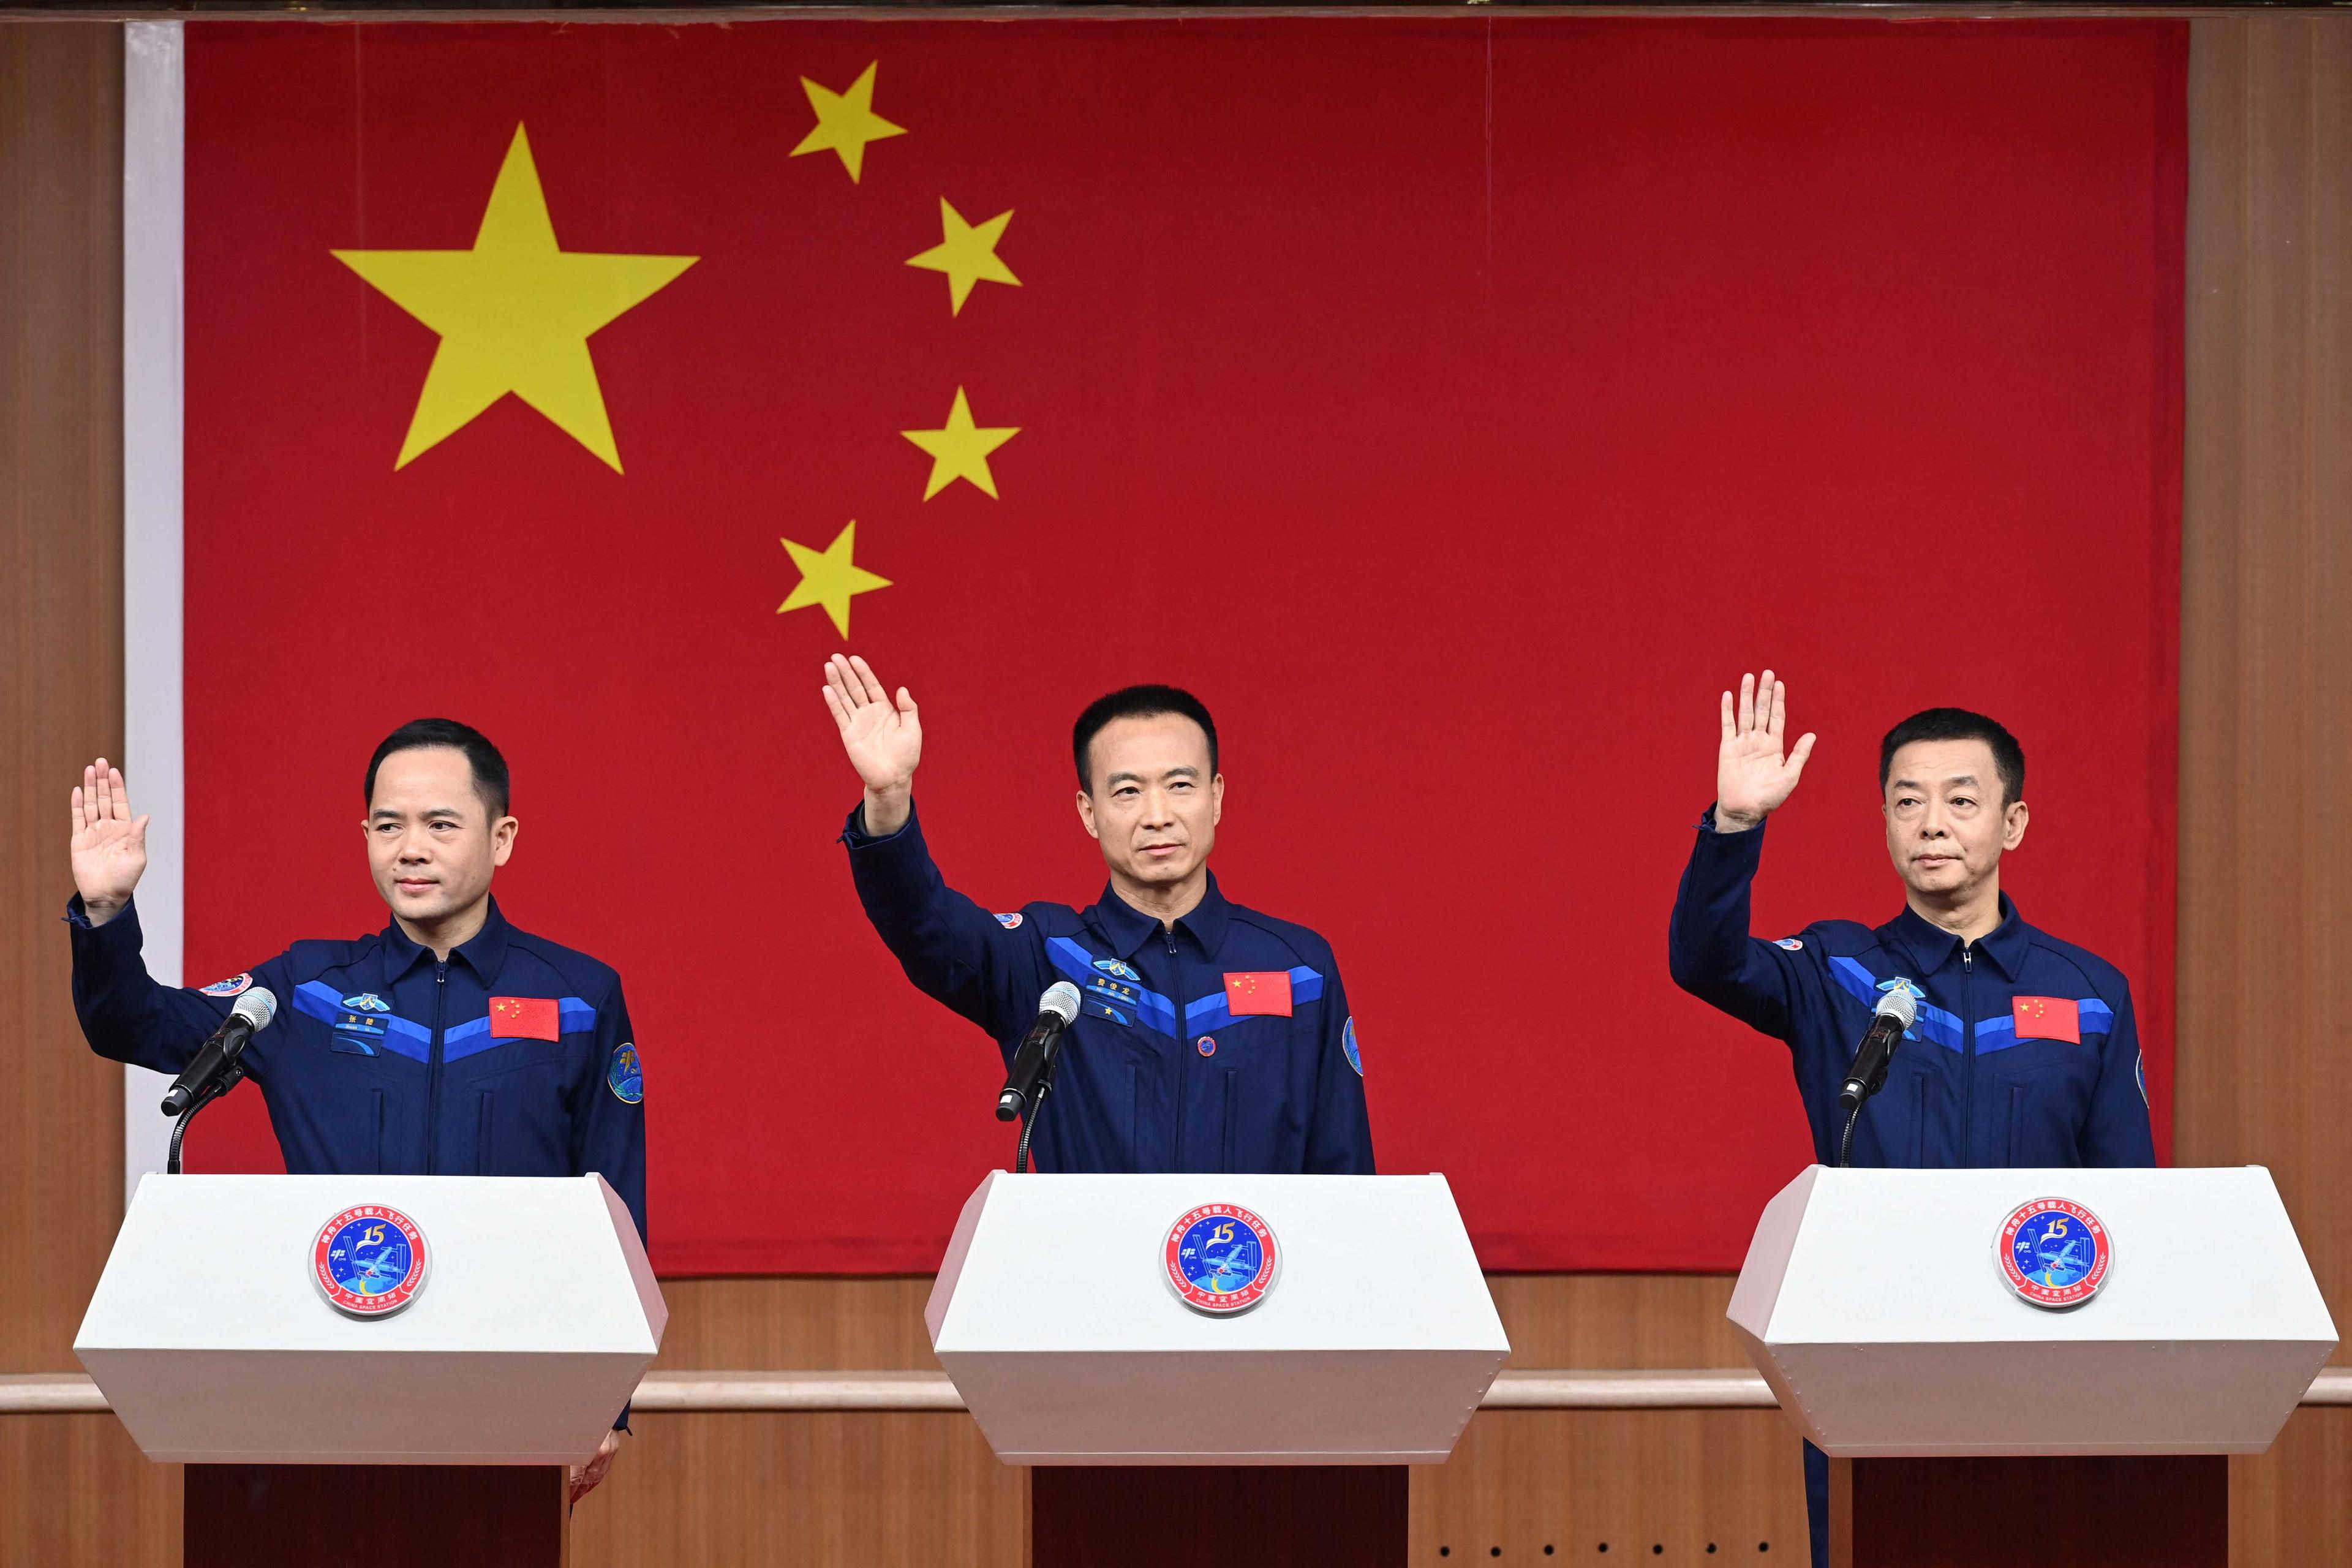 Astronauts Fei Junlong, Deng Qingming and Zhang Lu attend a news conference at Jiuquan Satellite Launch Center, near Jiuquan, Gansu province, China Nov 28. Photo: Reuters